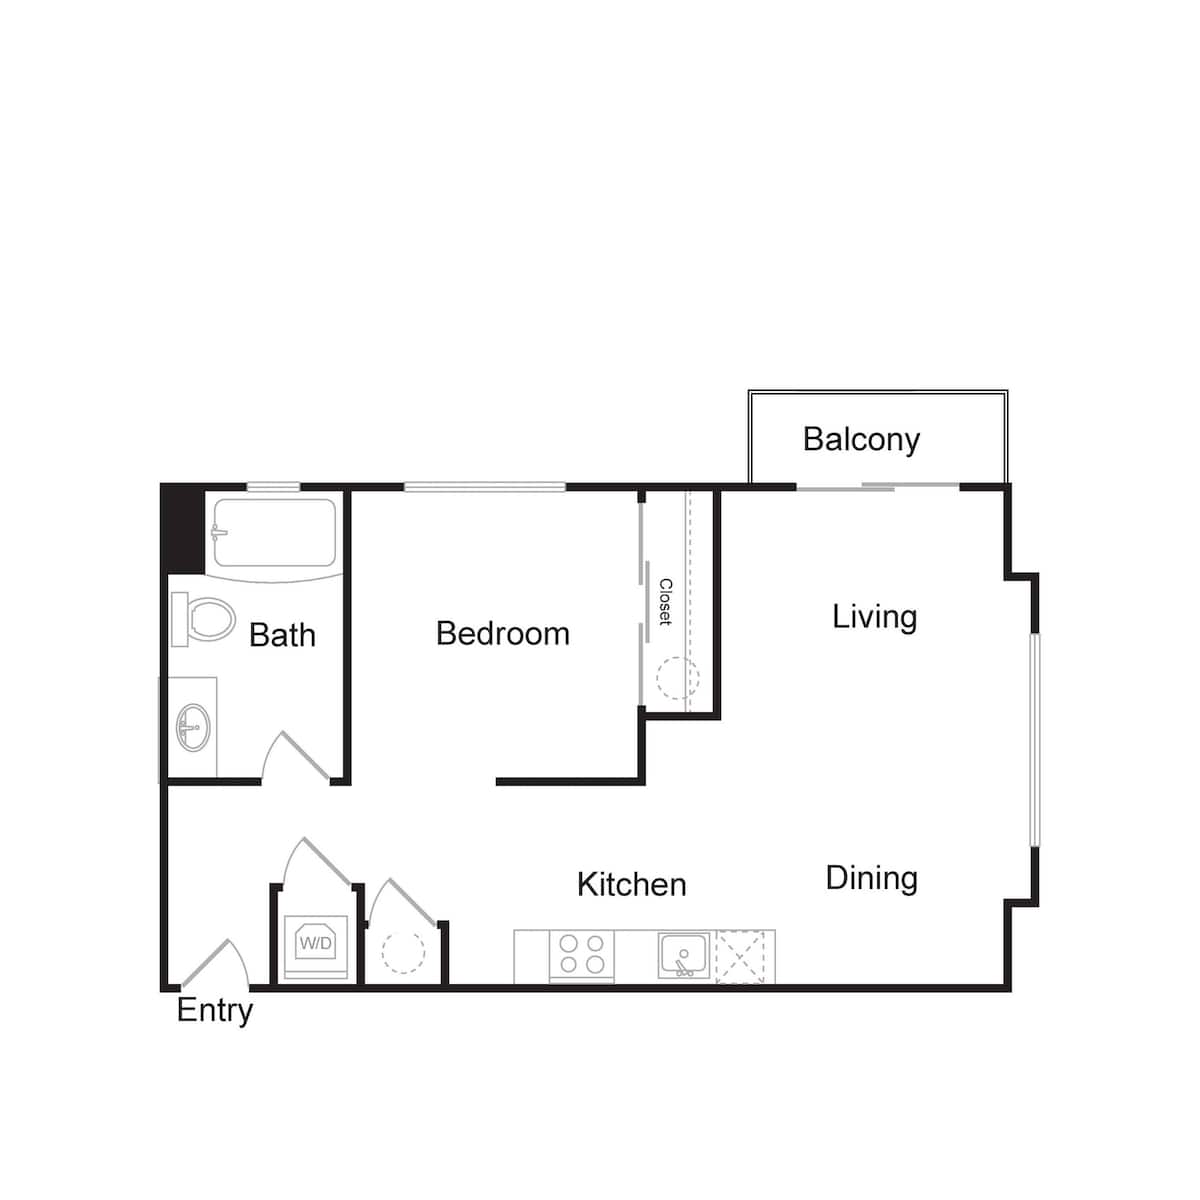 Floorplan diagram for S8, showing 1 bedroom